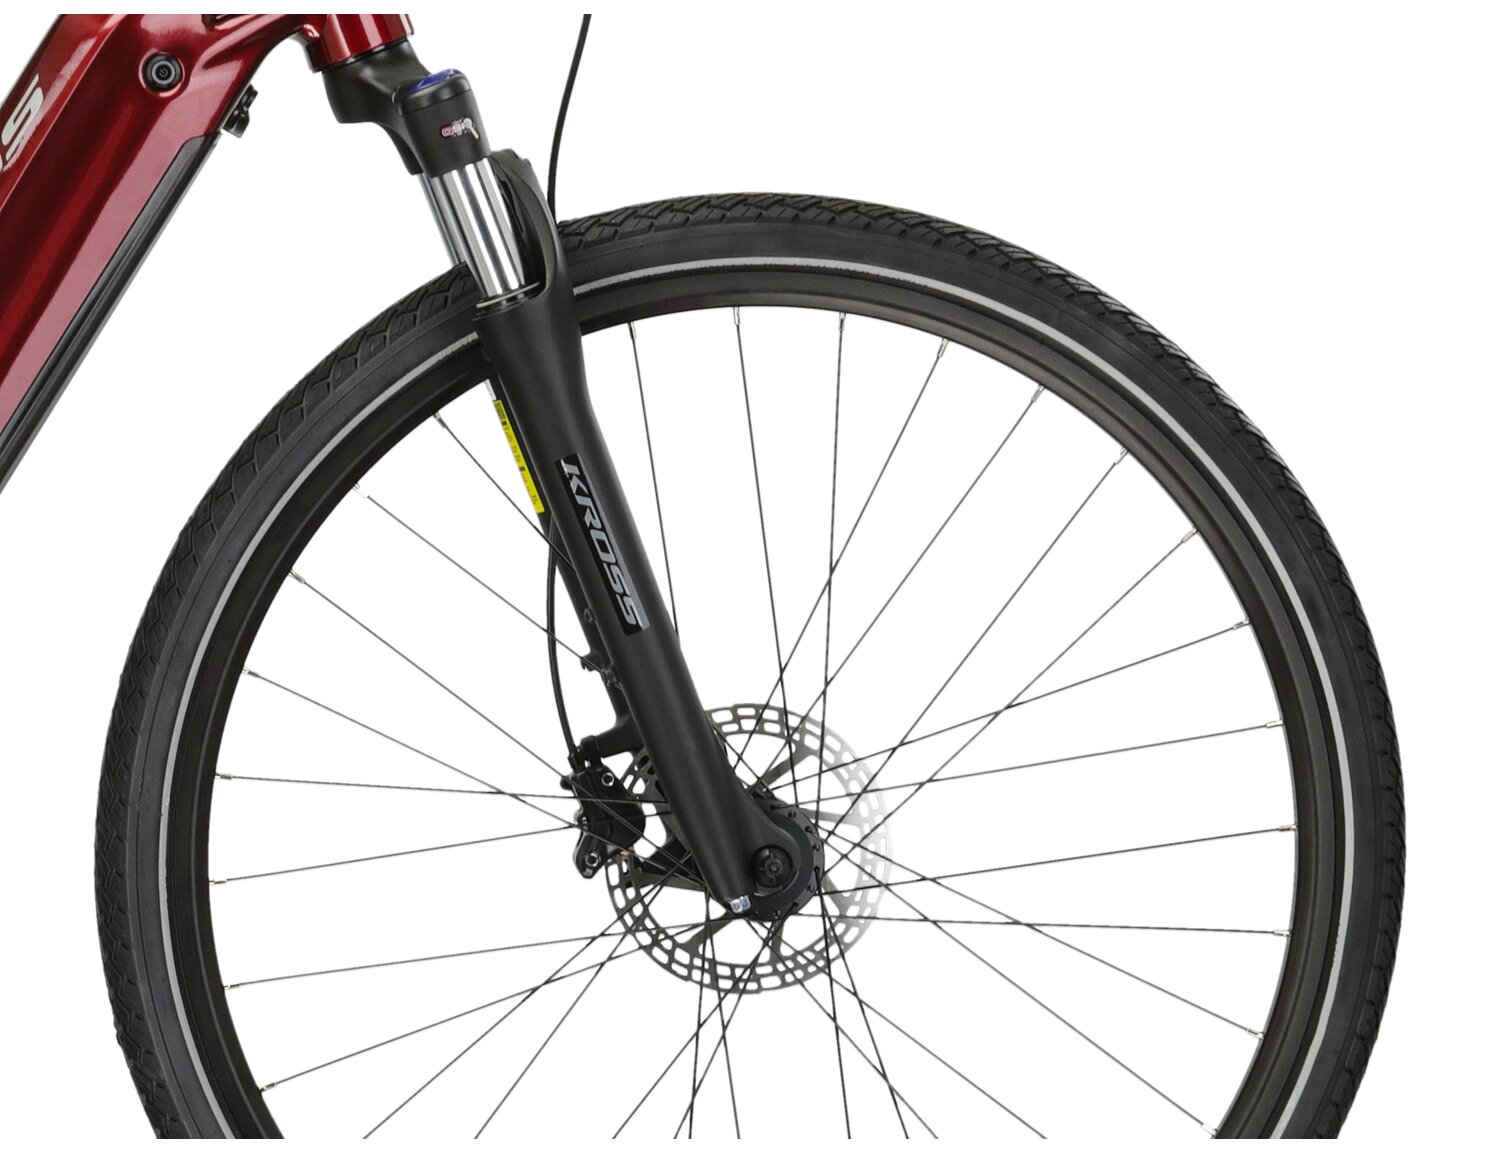 Aluminowa rama, amortyzowany widelec SR SUNTOUR NEX HLO o skoku 63 mm oraz opony w elektrycznym rowerze crossowym KROSS Evado Hybrid 2.0 730 Wh